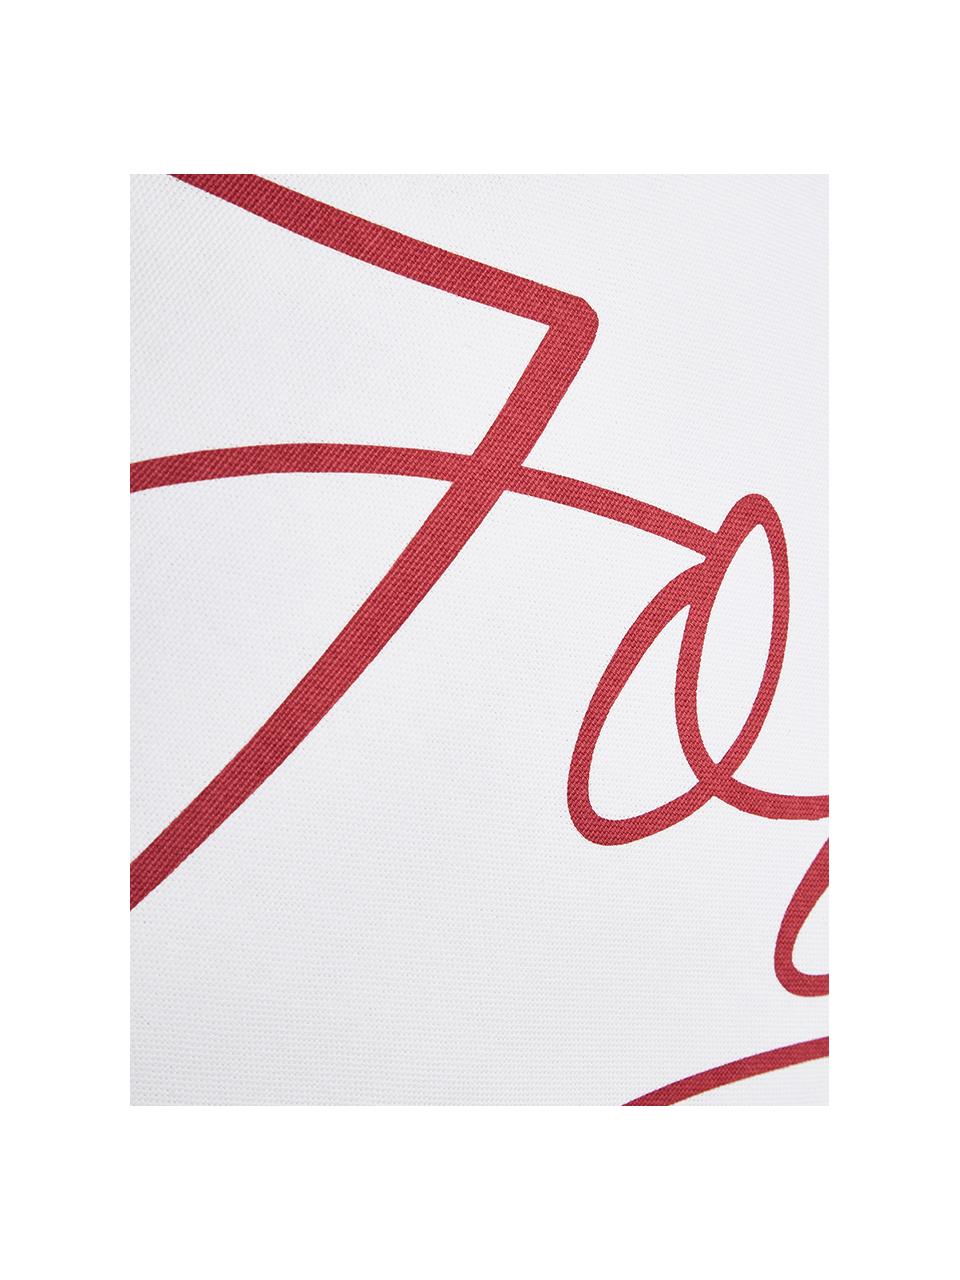 Kussenhoes Joy met opschrift in wit-rood, Katoen, Wit, rood, 40 x 40 cm